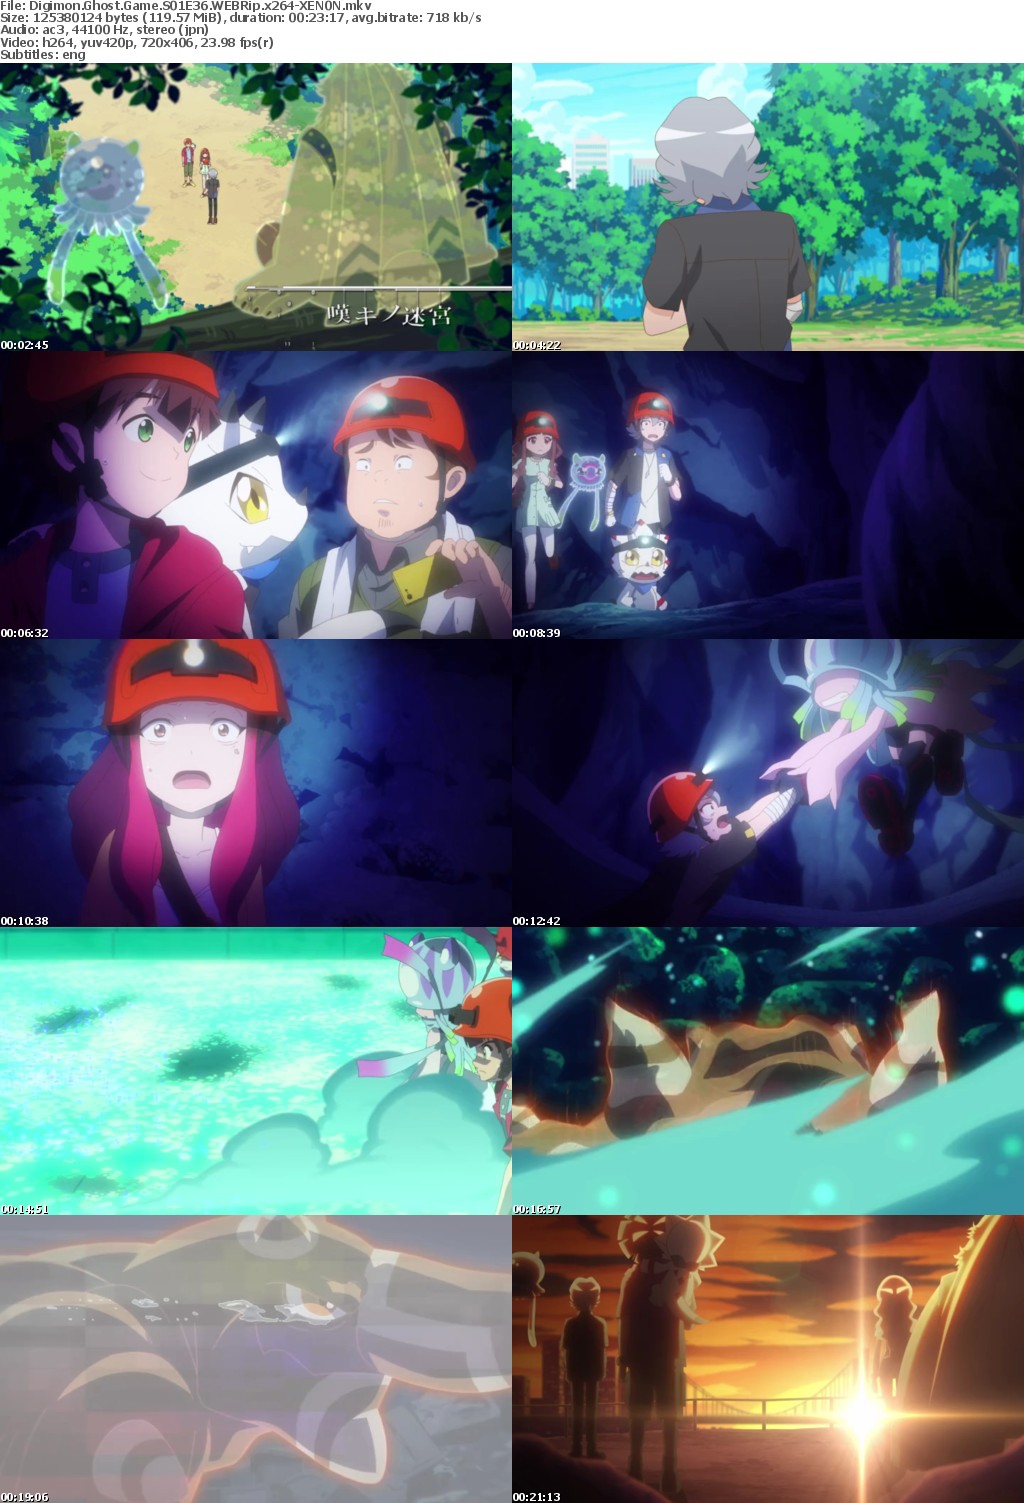 Digimon Ghost Game S01E36 WEBRip x264-XEN0N